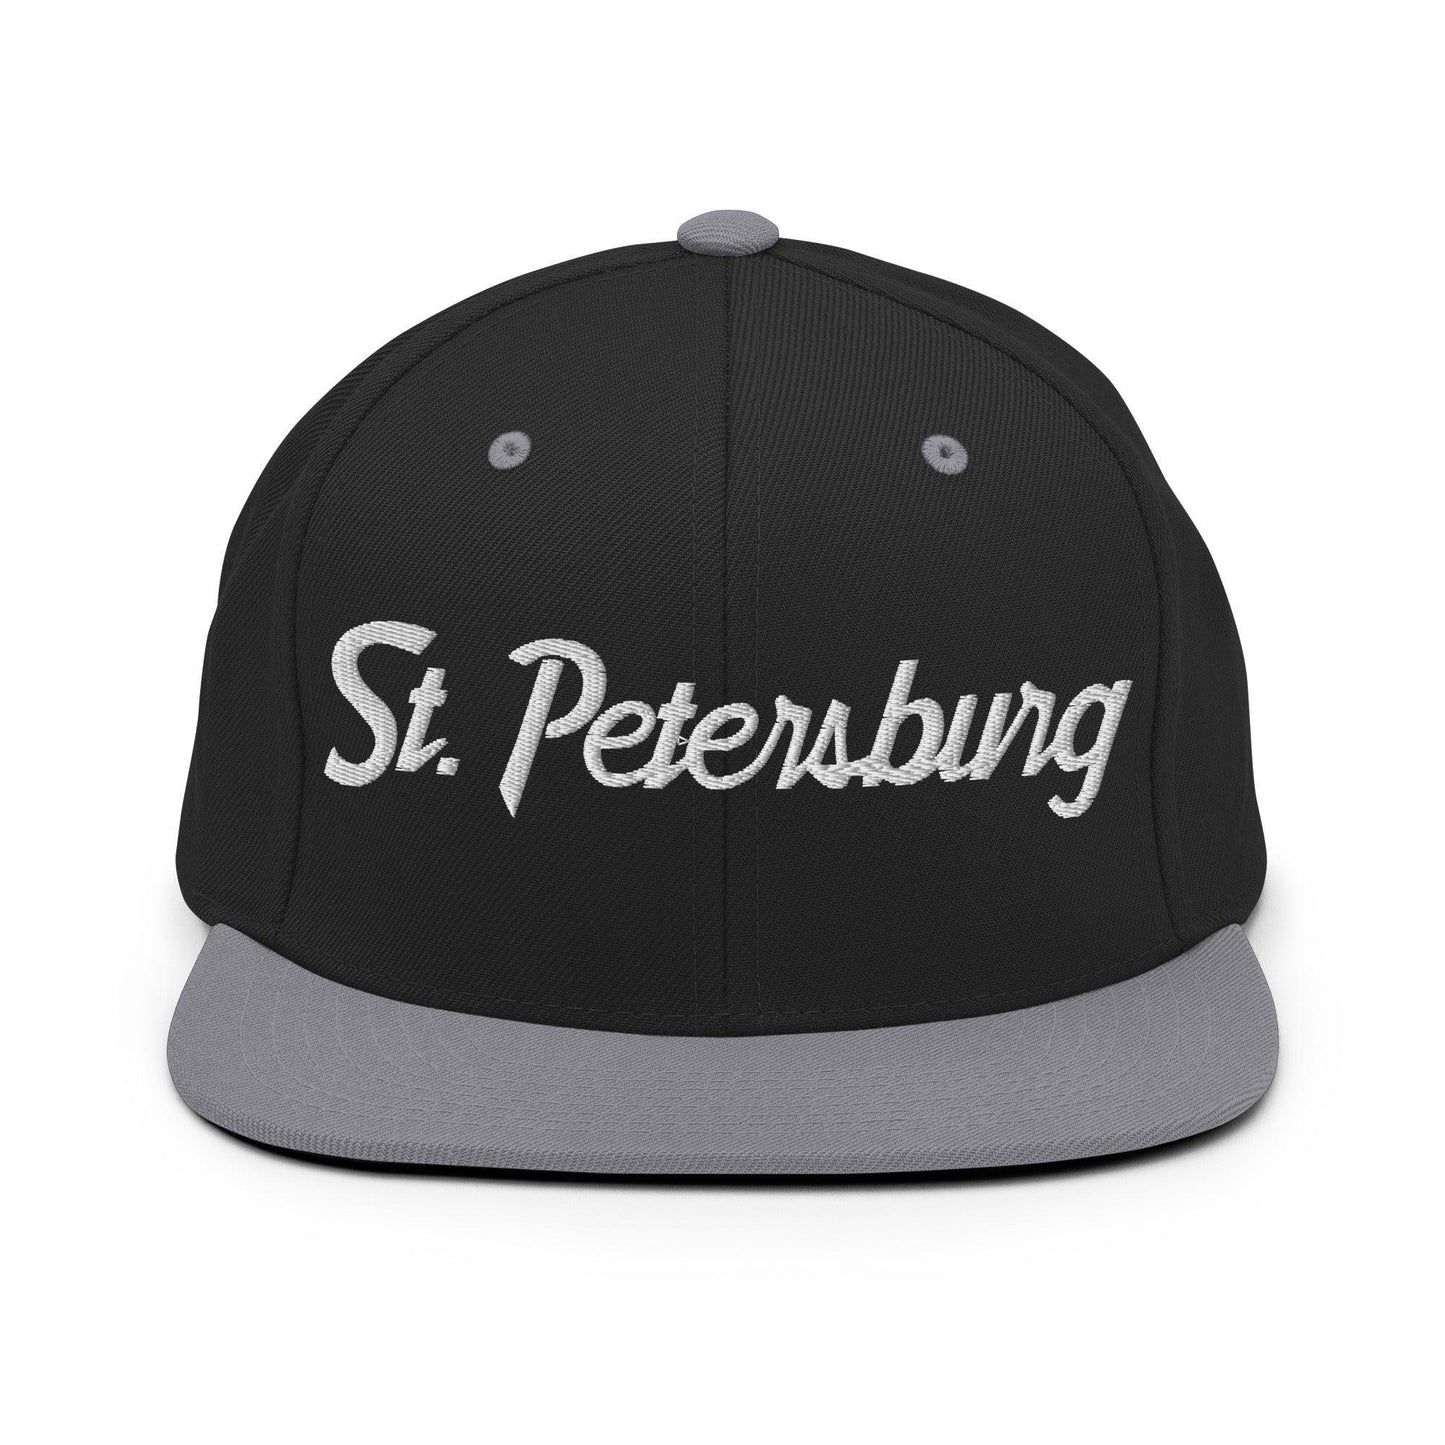 St. Petersburg Script Snapback Hat Black/ Silver